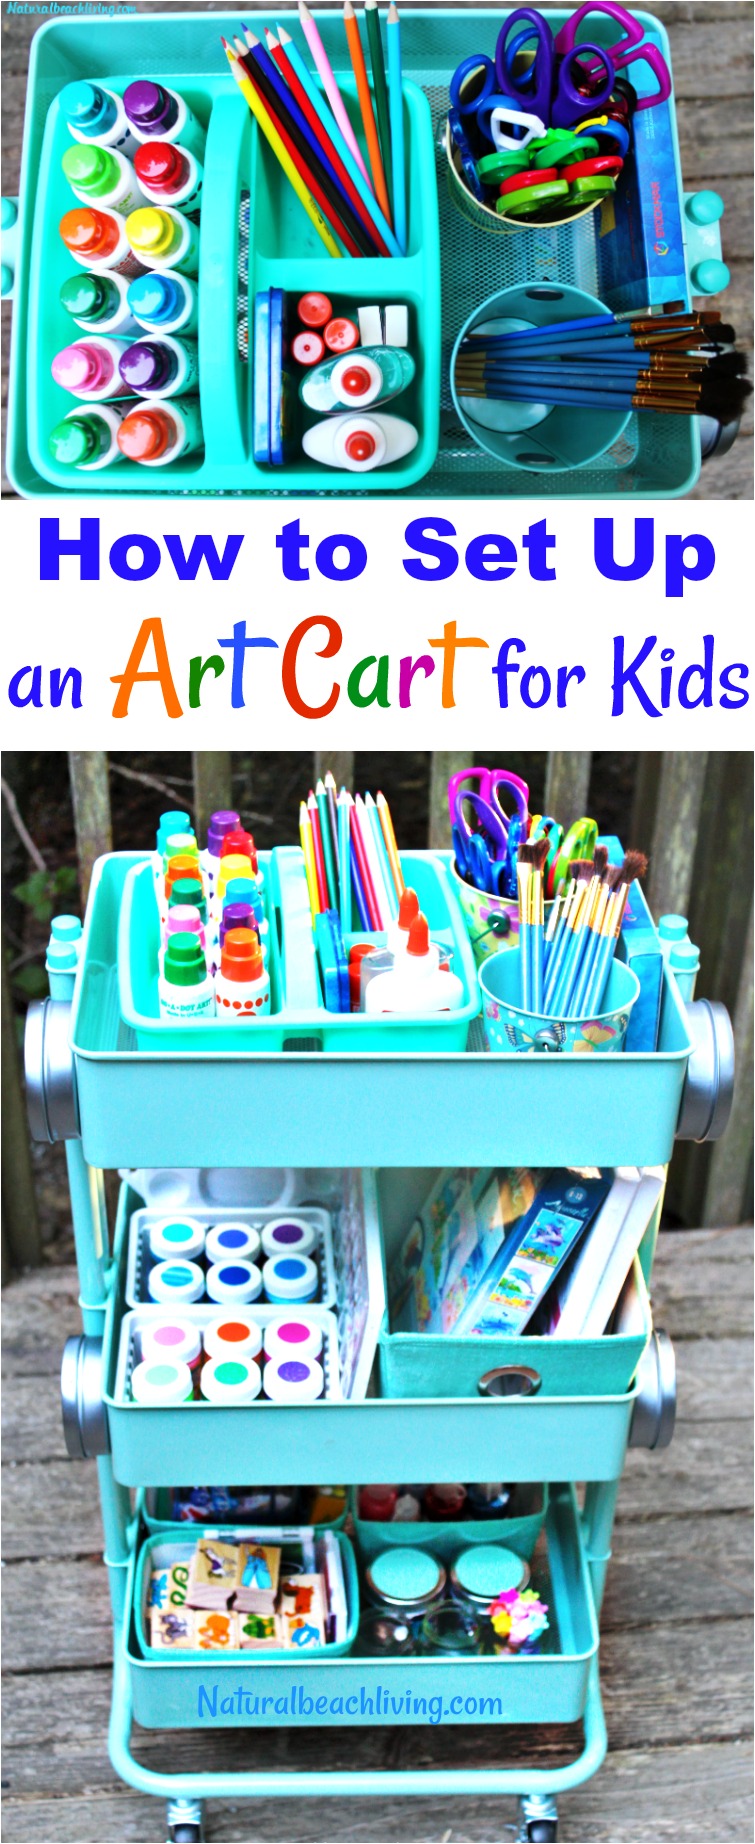 How to Set Up a Kids Arts Crafts Cart, Art Supply Cart for Kids, Easy to set up Arts and Crafts space for kids, Homeschool ideas, Preschool areas, Kid Spaces and arts and crafts for kids